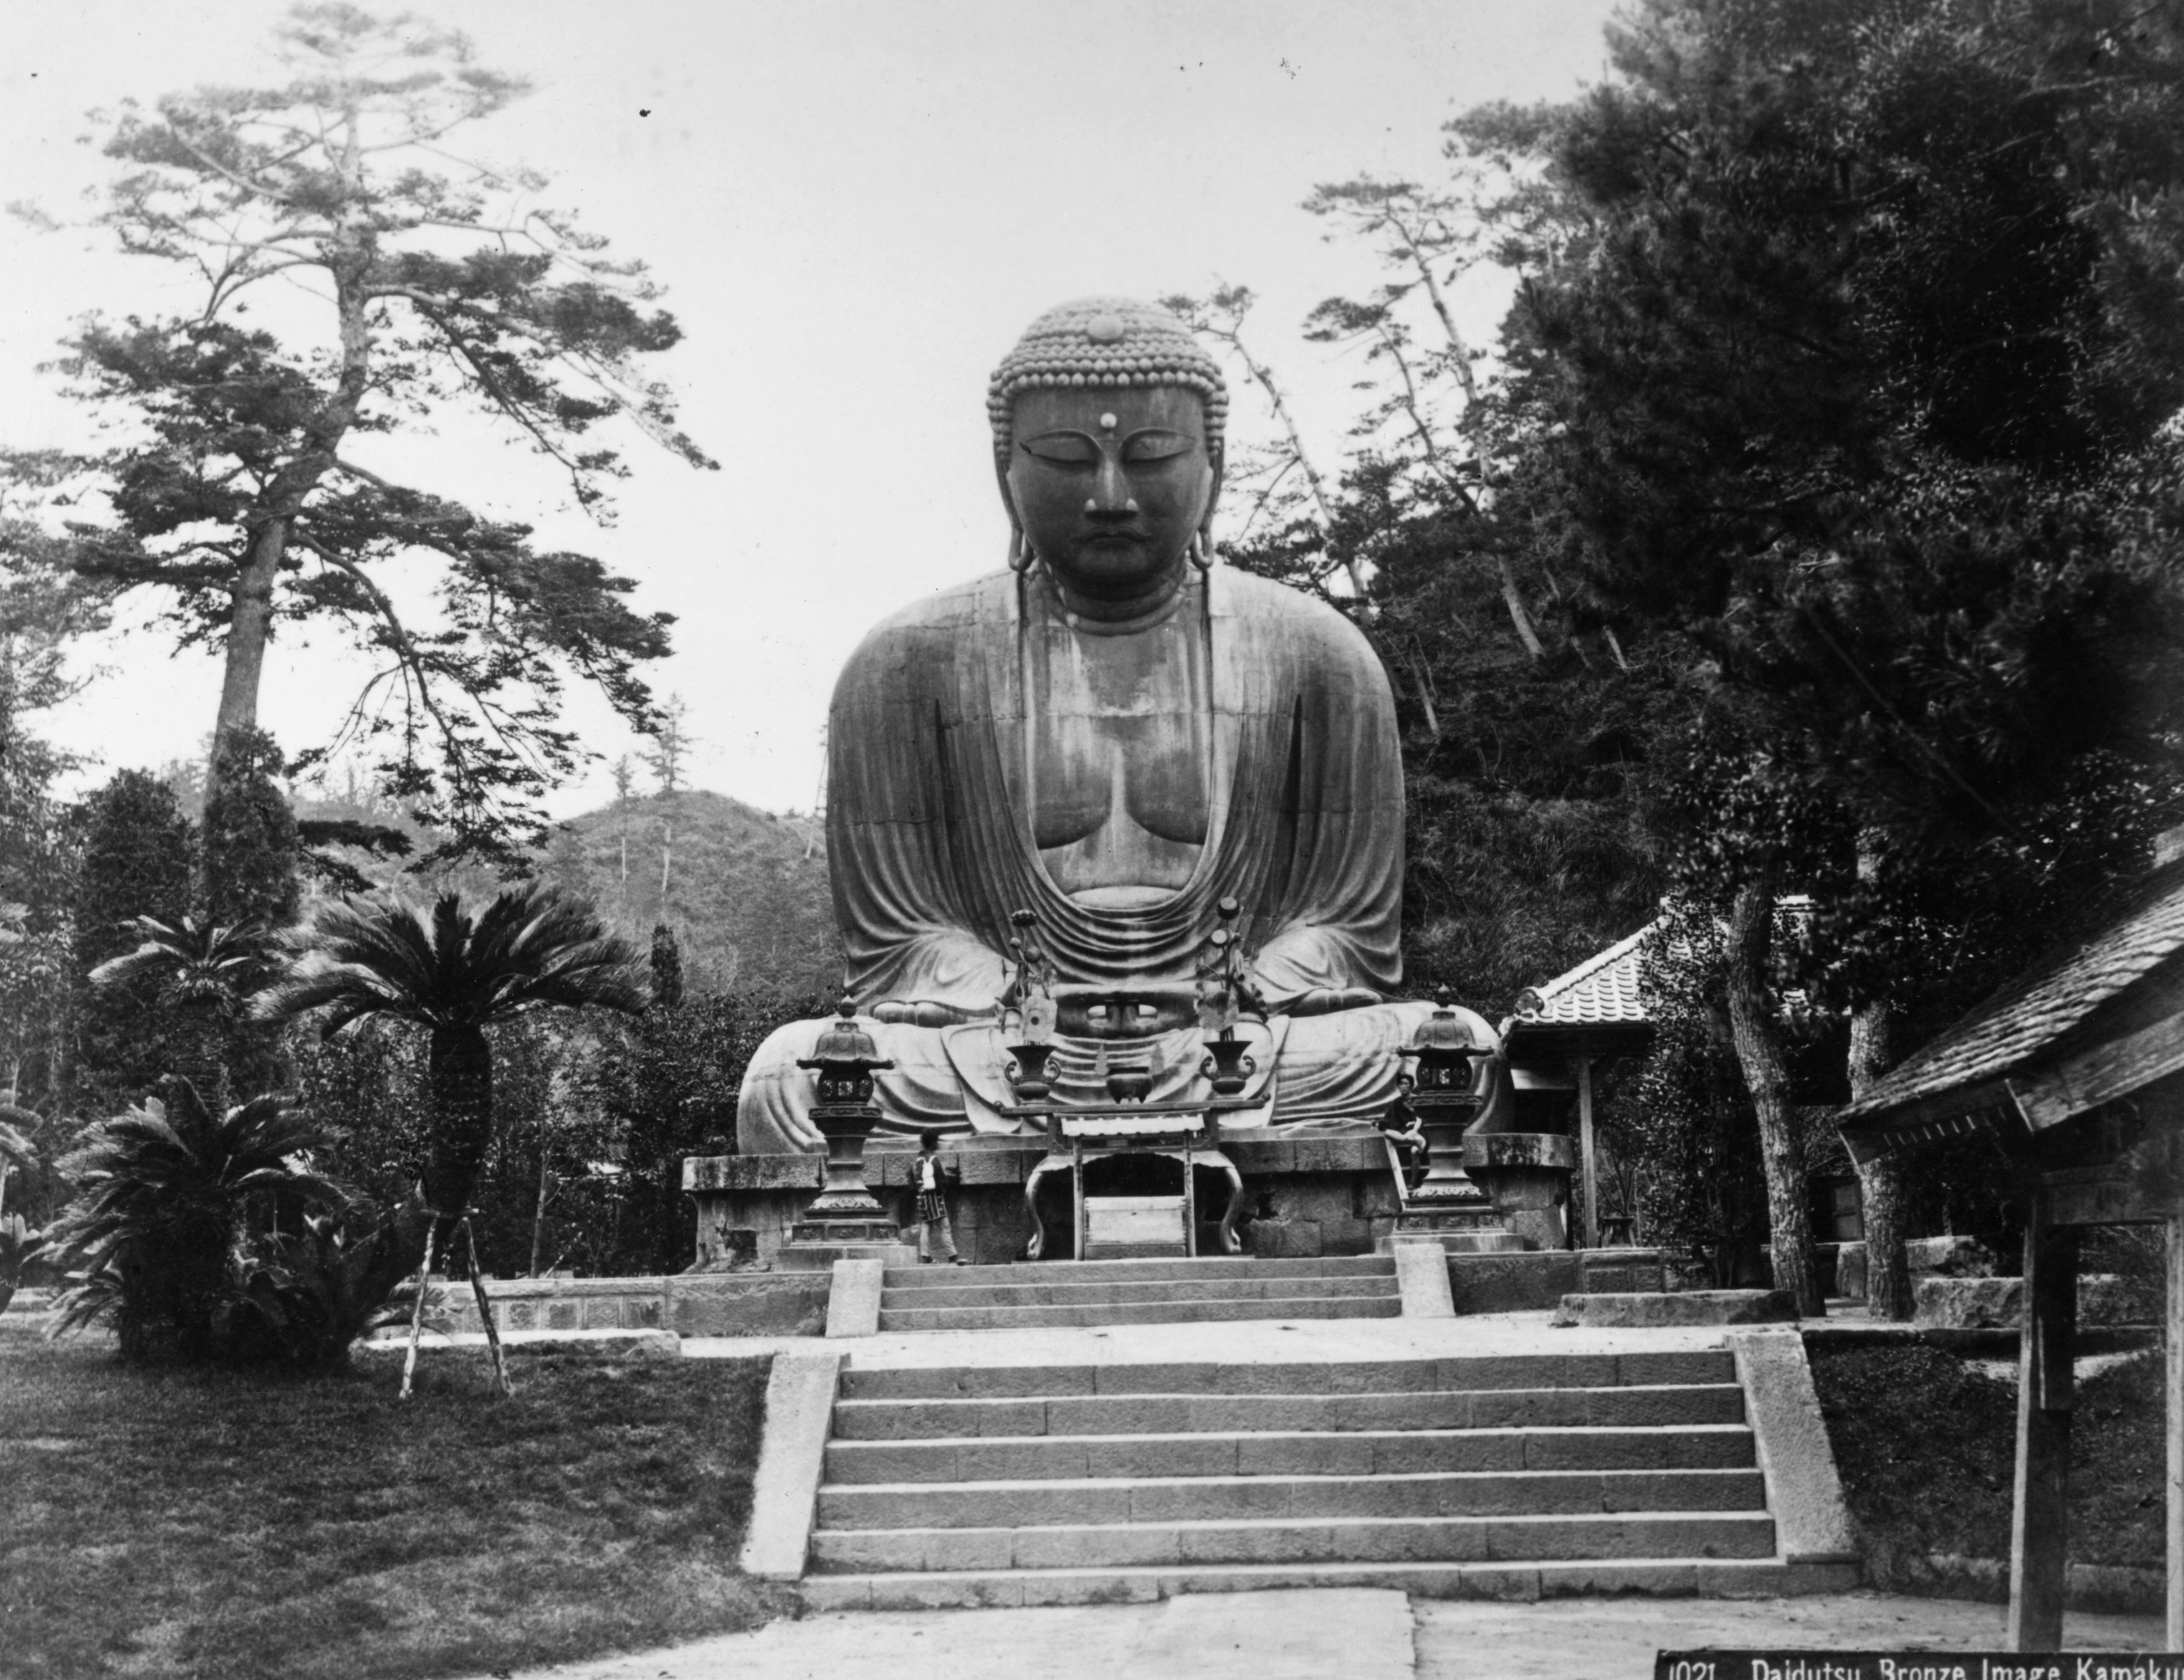 Le opere più belle del mondo&#8230;secondo noi: #10 Il Buddha di Kamakura